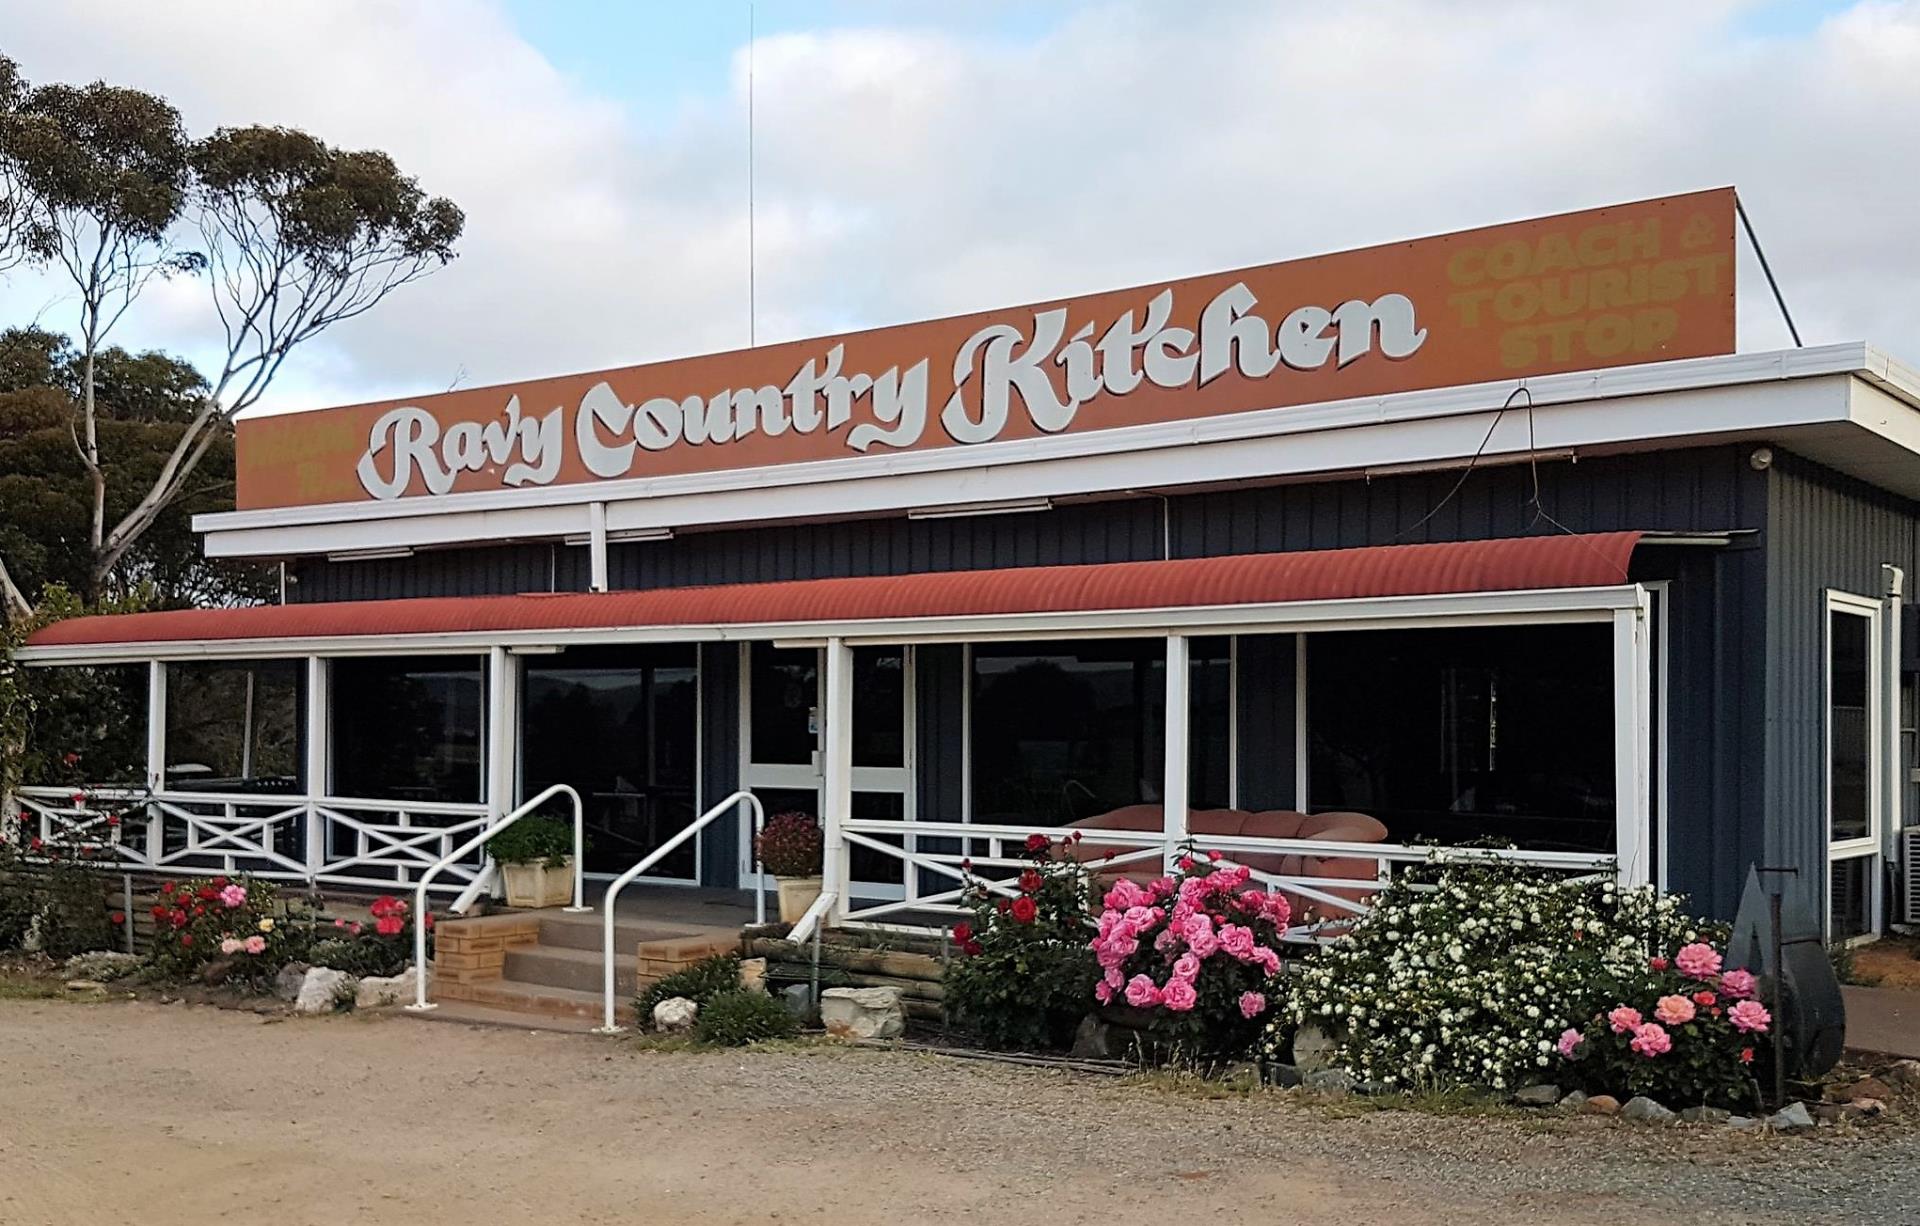 Ravy Country Kitchen